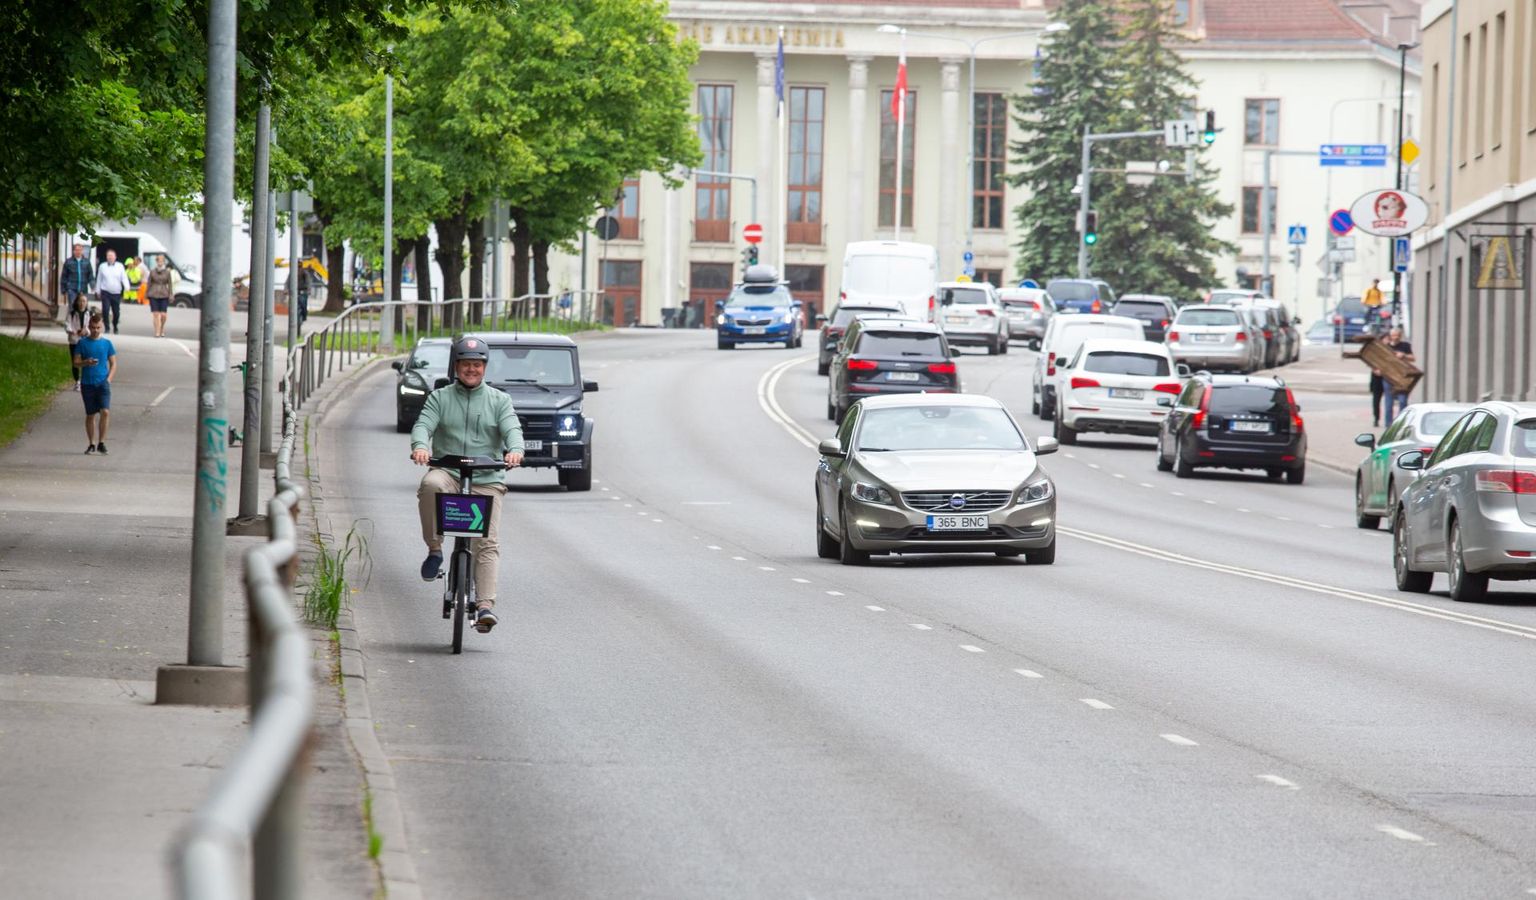 Autovabaduse puiestee projektijuht Ragnar Kekkonen sõitis läinud nädalal mööda Riia tänavat alla kohas, kuhu on kavandatud ajutine suvine rattatee.